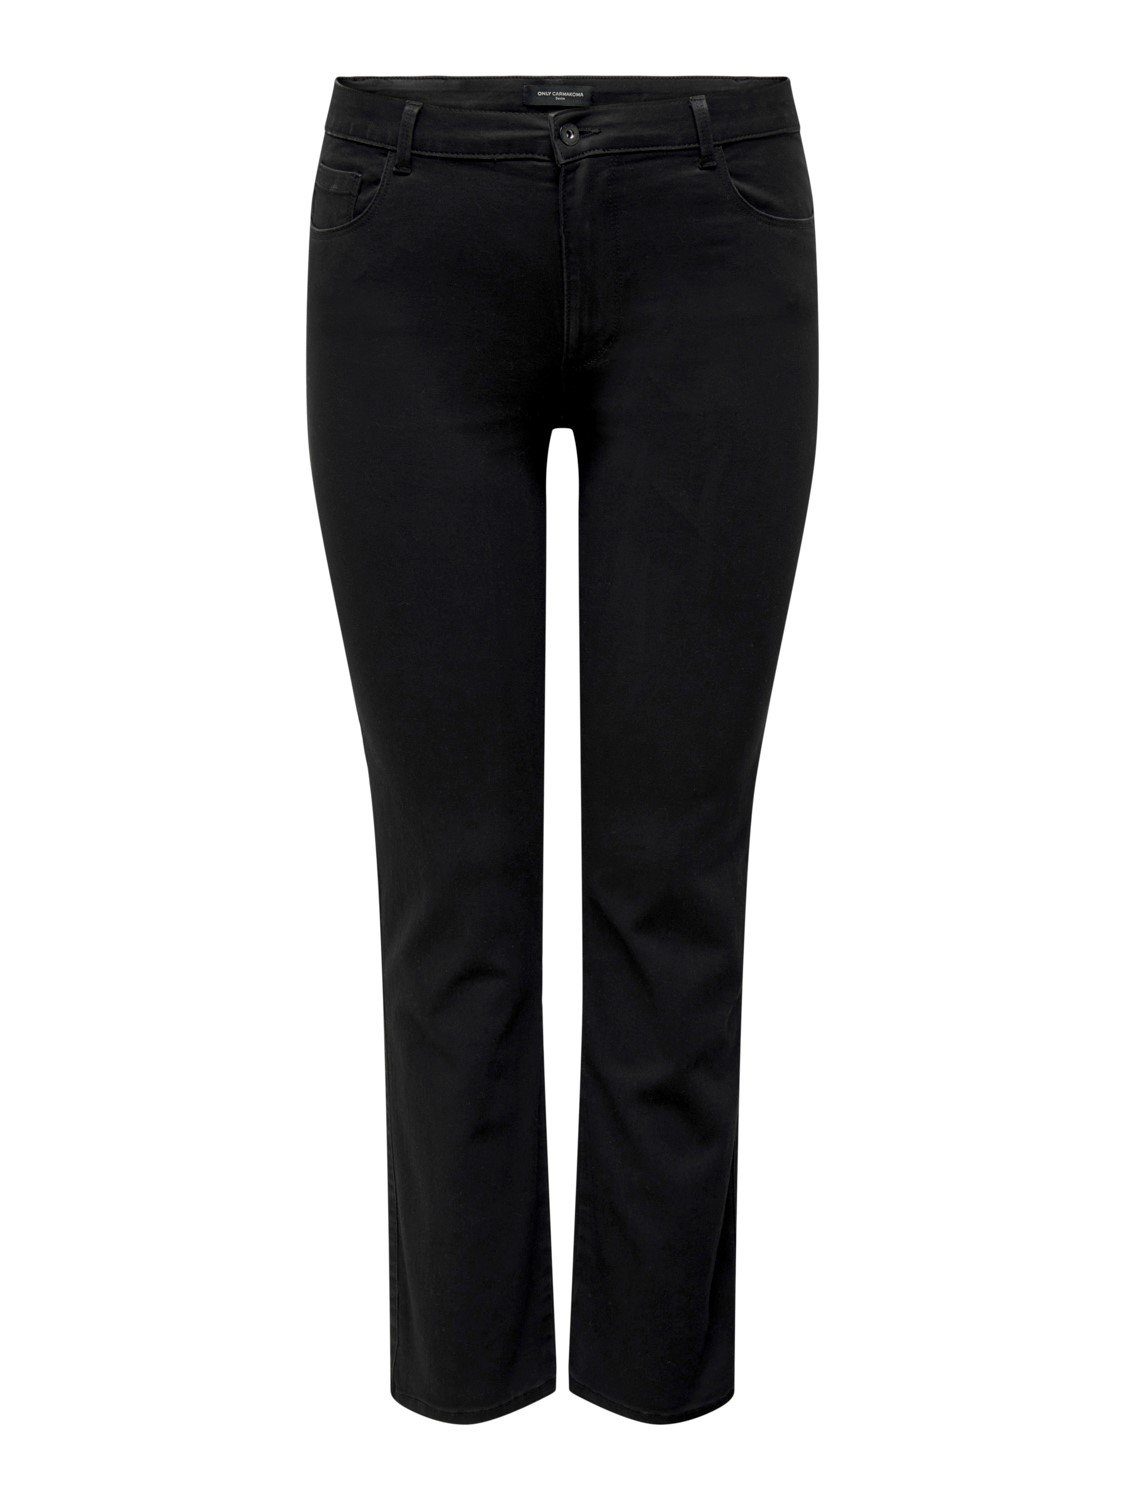 ONLY Skinny-fit-Jeans CARAUGUSTA BLACK mit Stretch in großen Größen